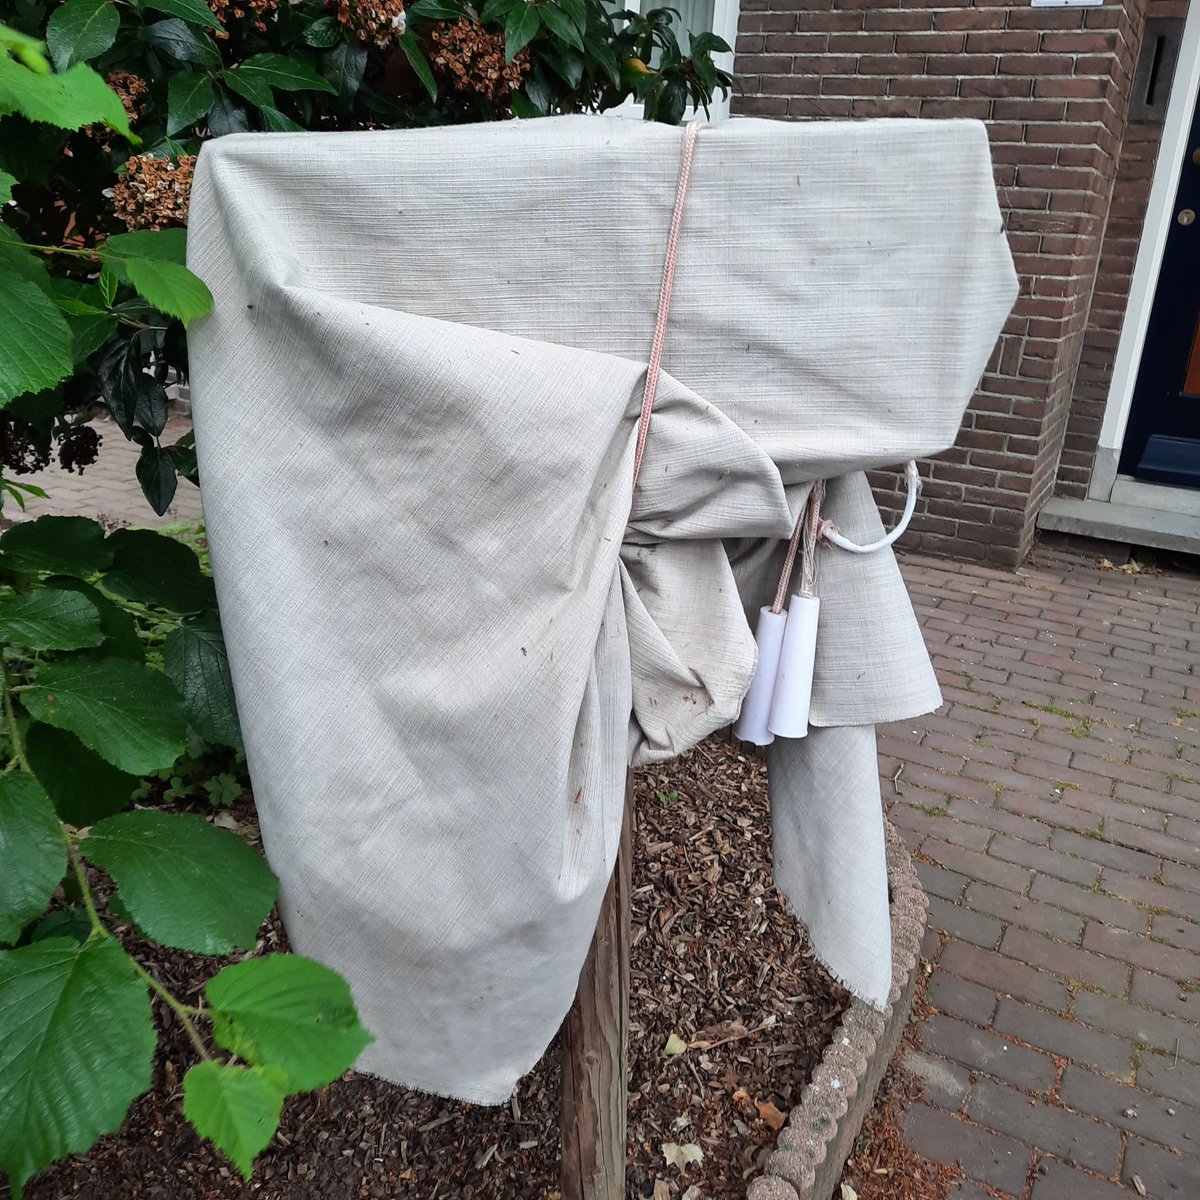 This is not a postbox/ Dit is geen brievenbus
Biezenstraat Nijmegen
#findsonfriday